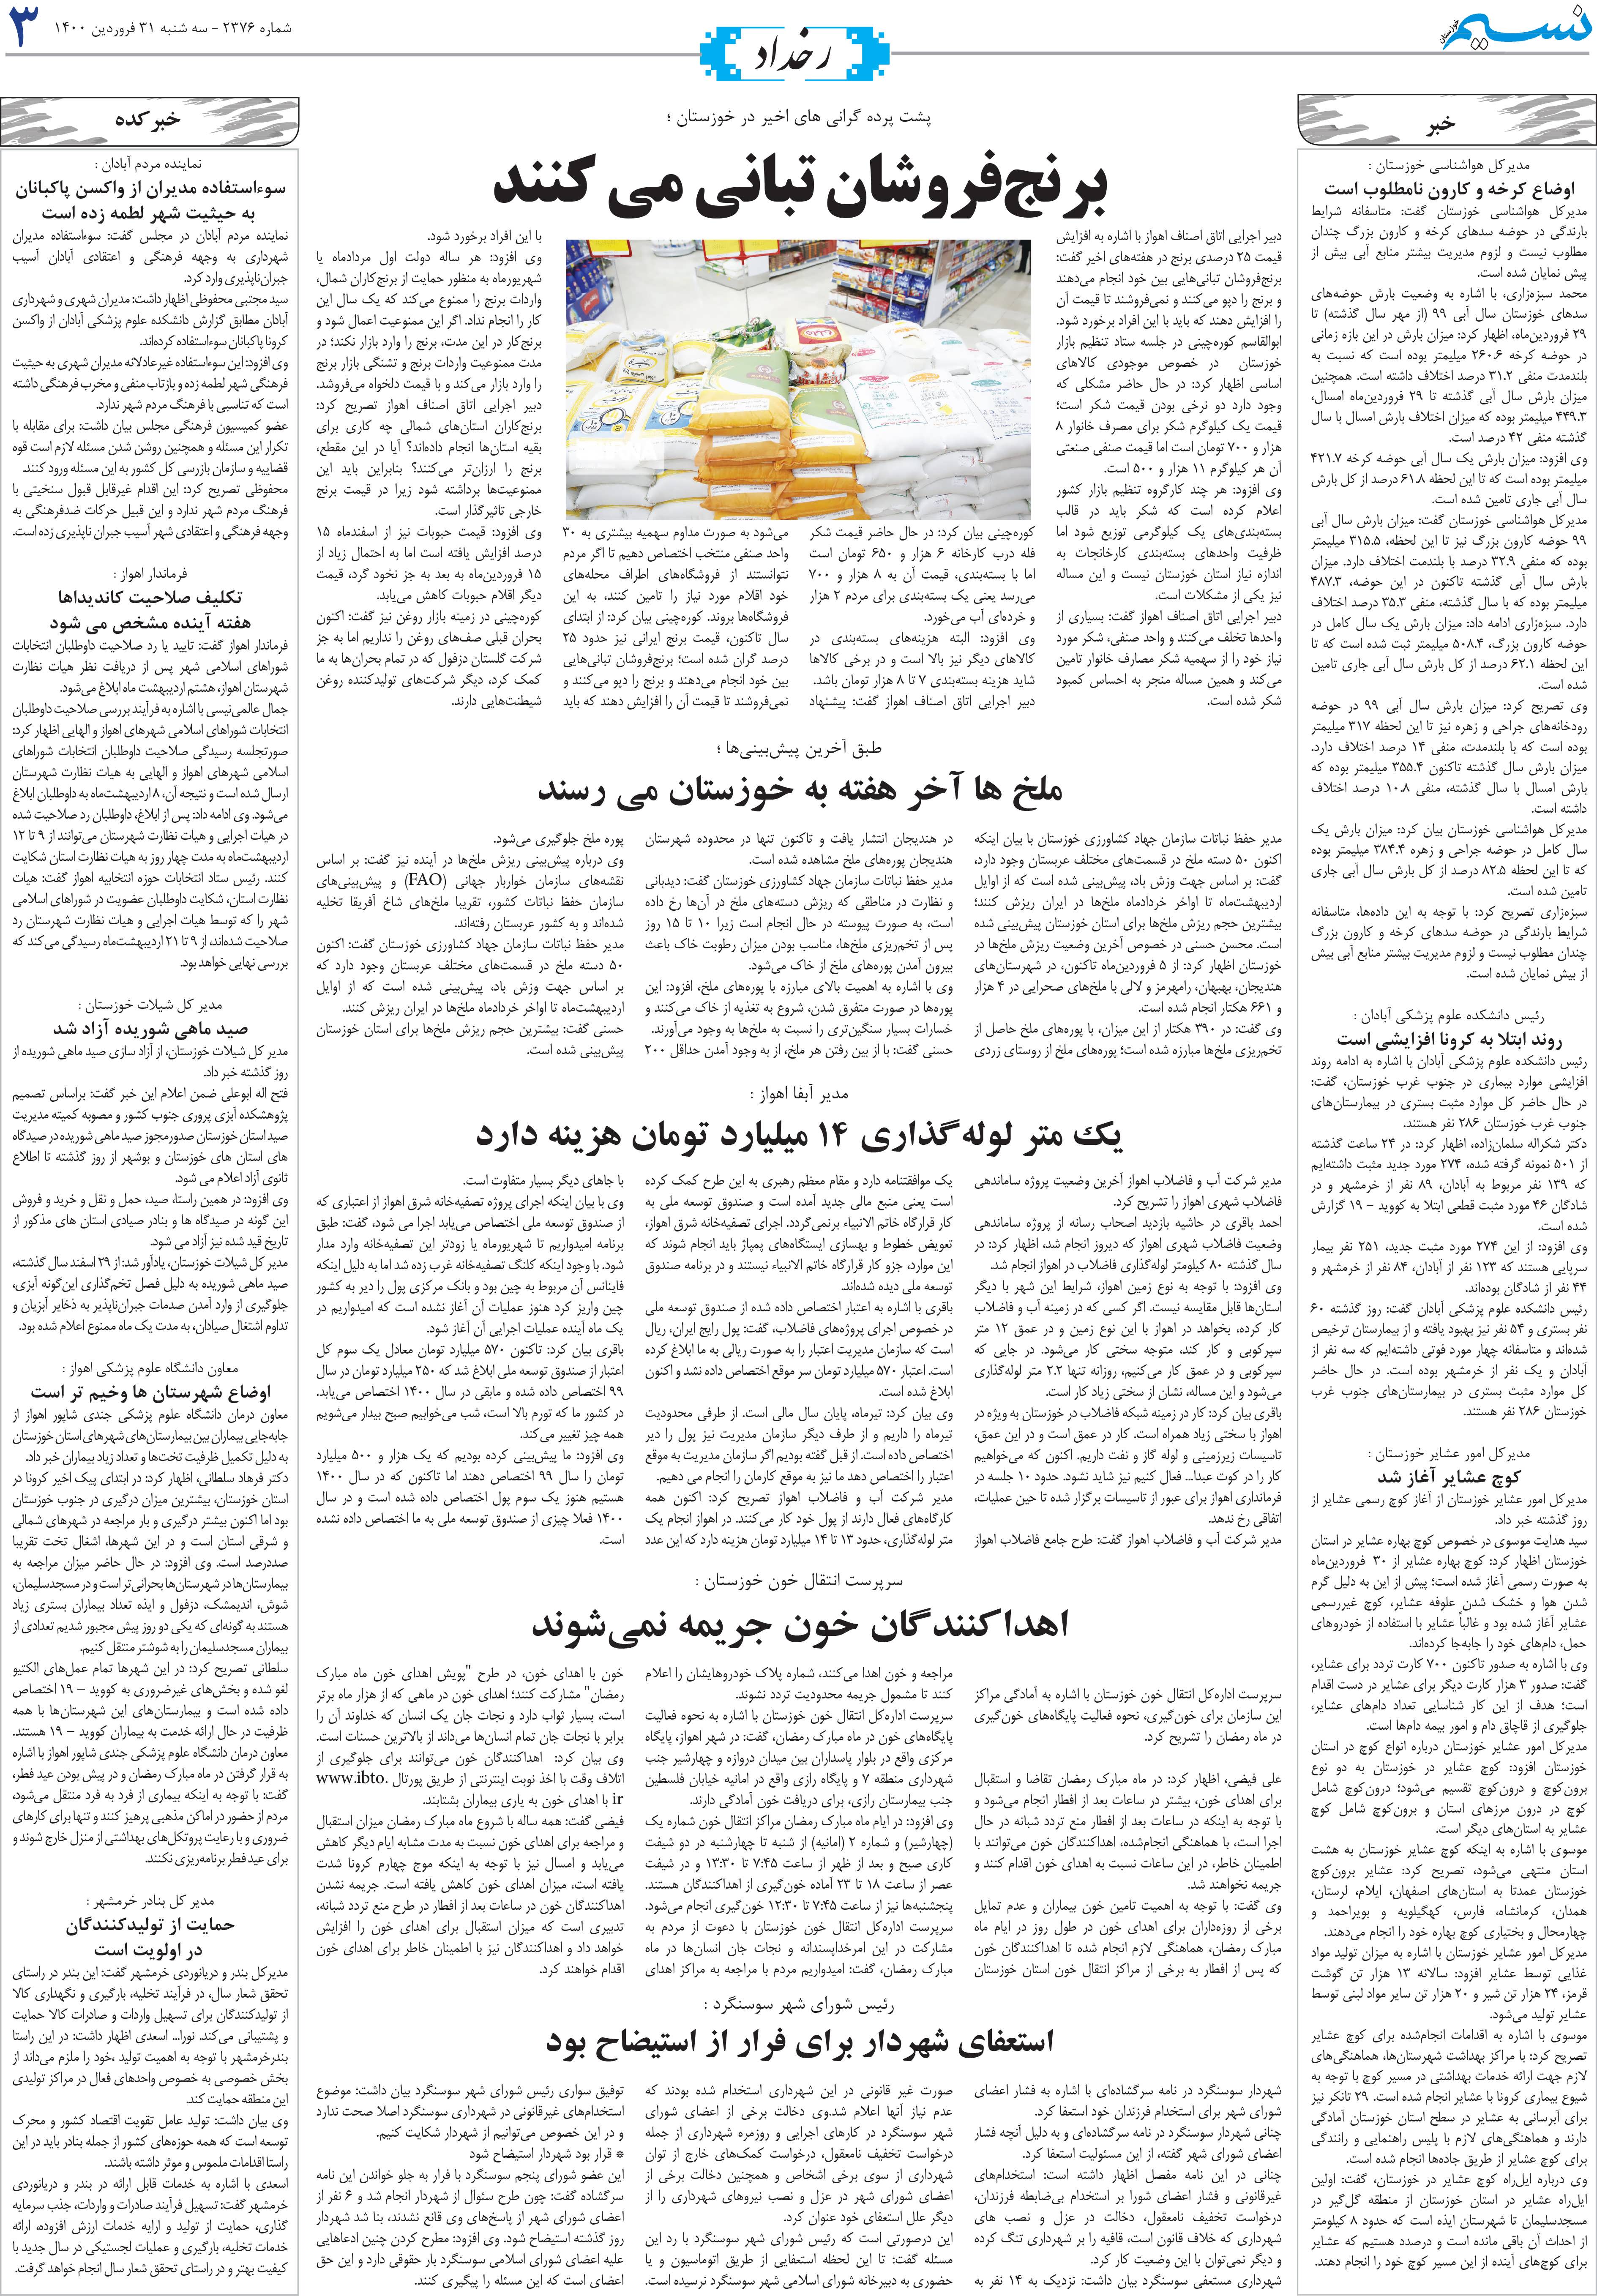 صفحه رخداد روزنامه نسیم شماره 2376